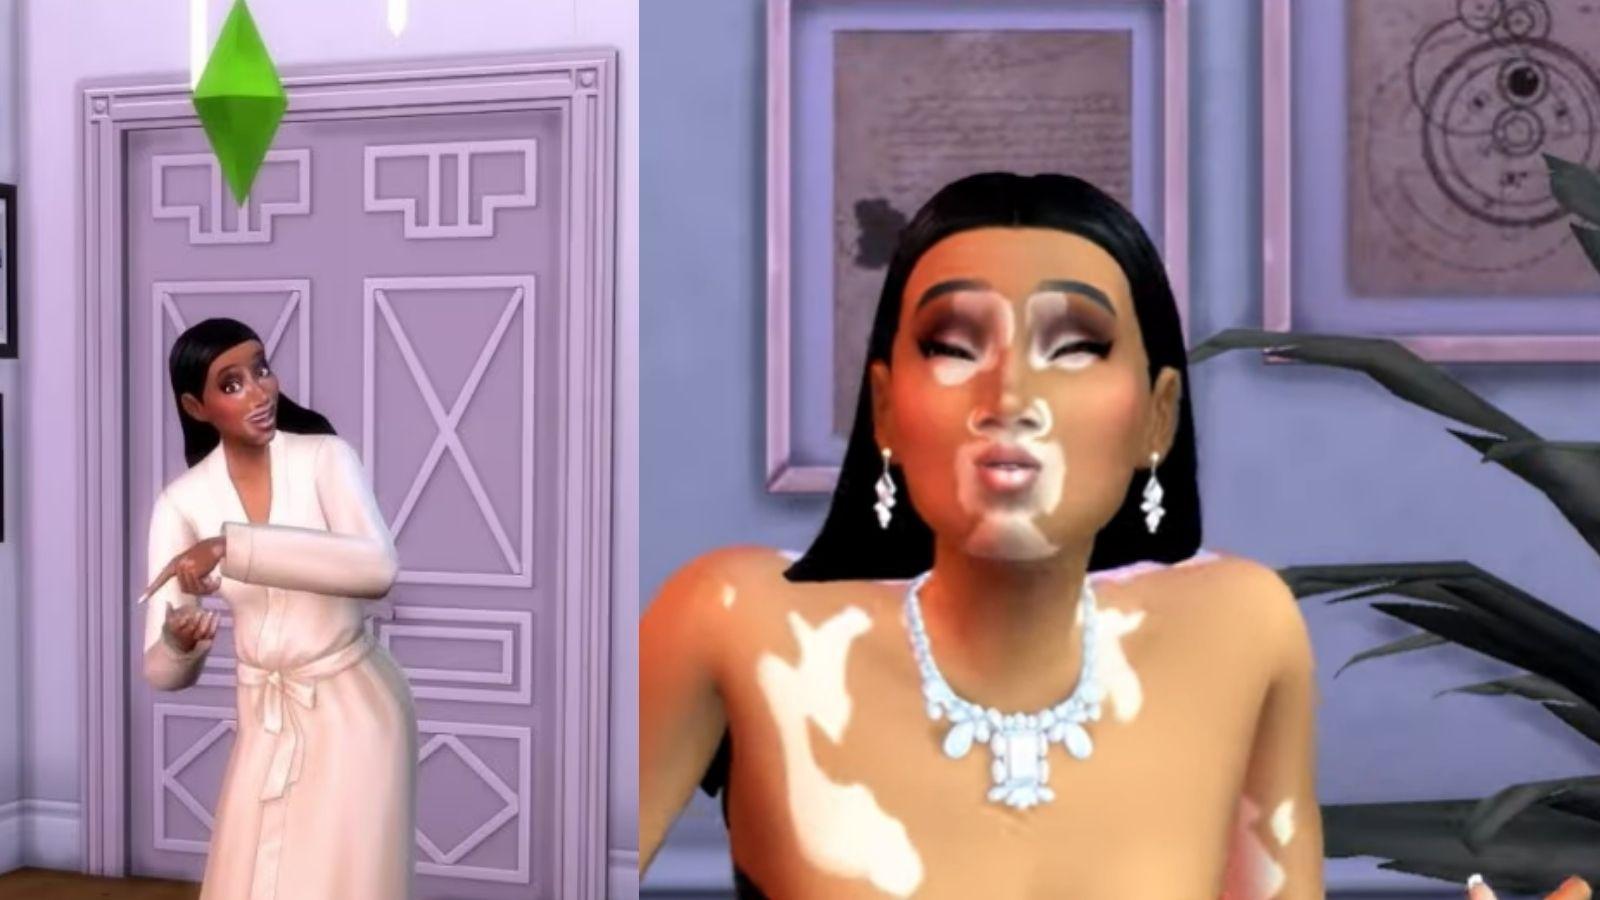 Sims 4'te Vitiligo Adıyla Yeni Güncelleme Duyuruldu